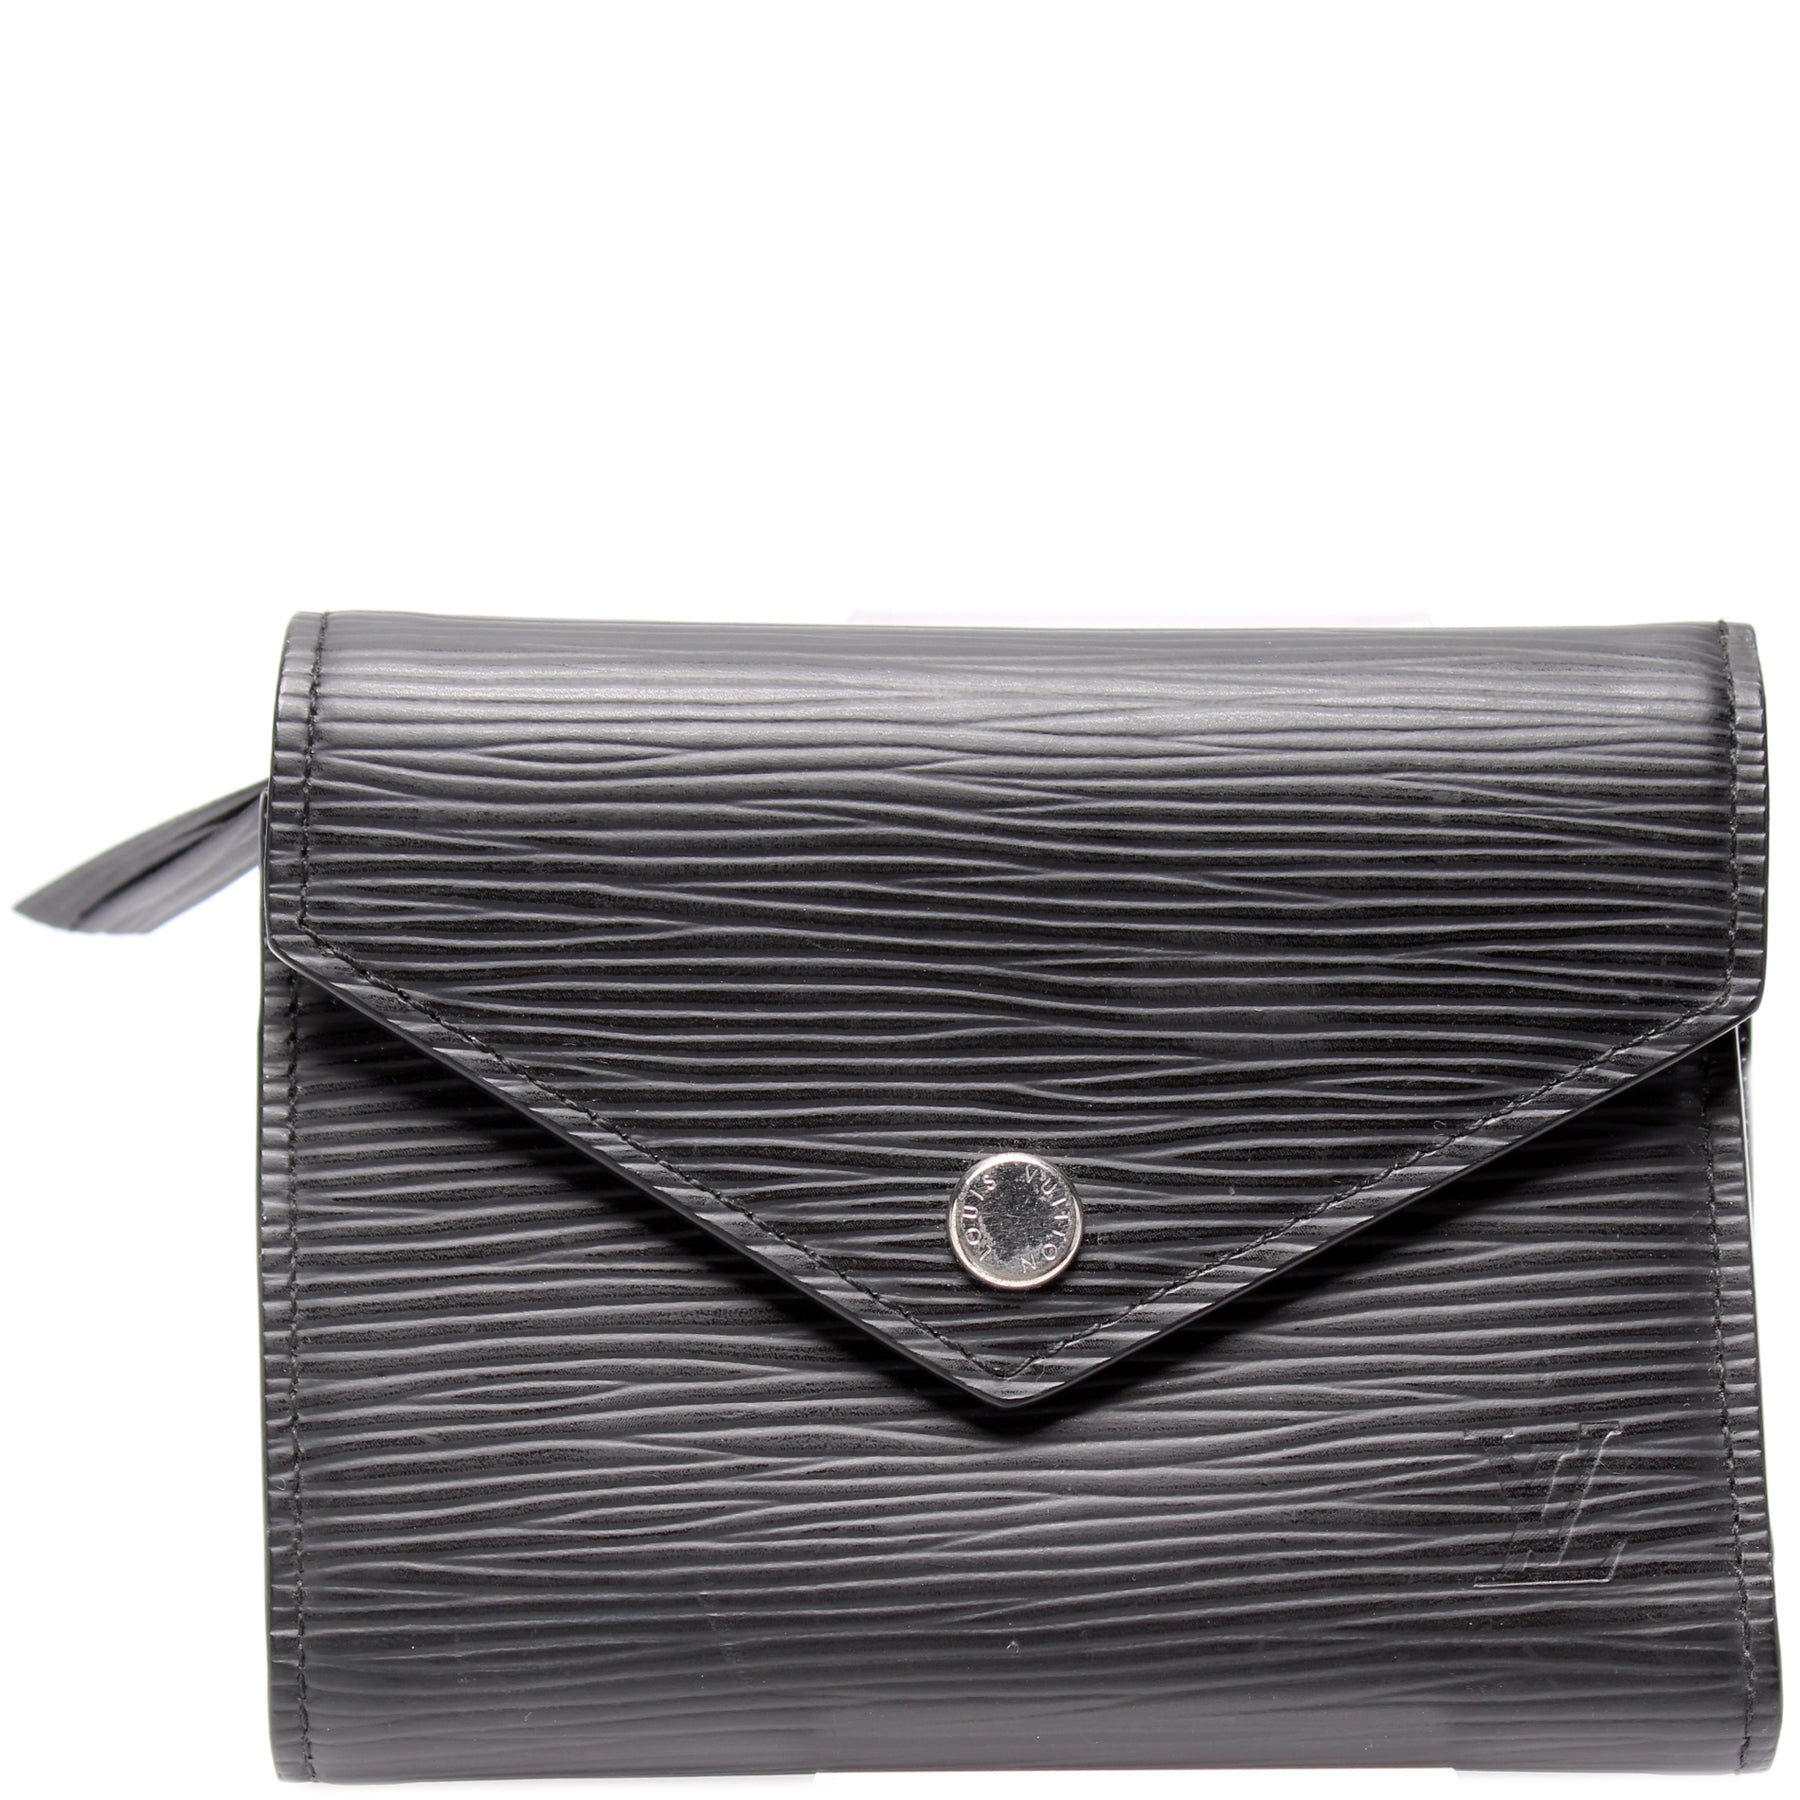 Review: Louis Vuitton Victorine Wallet Epi Leather 